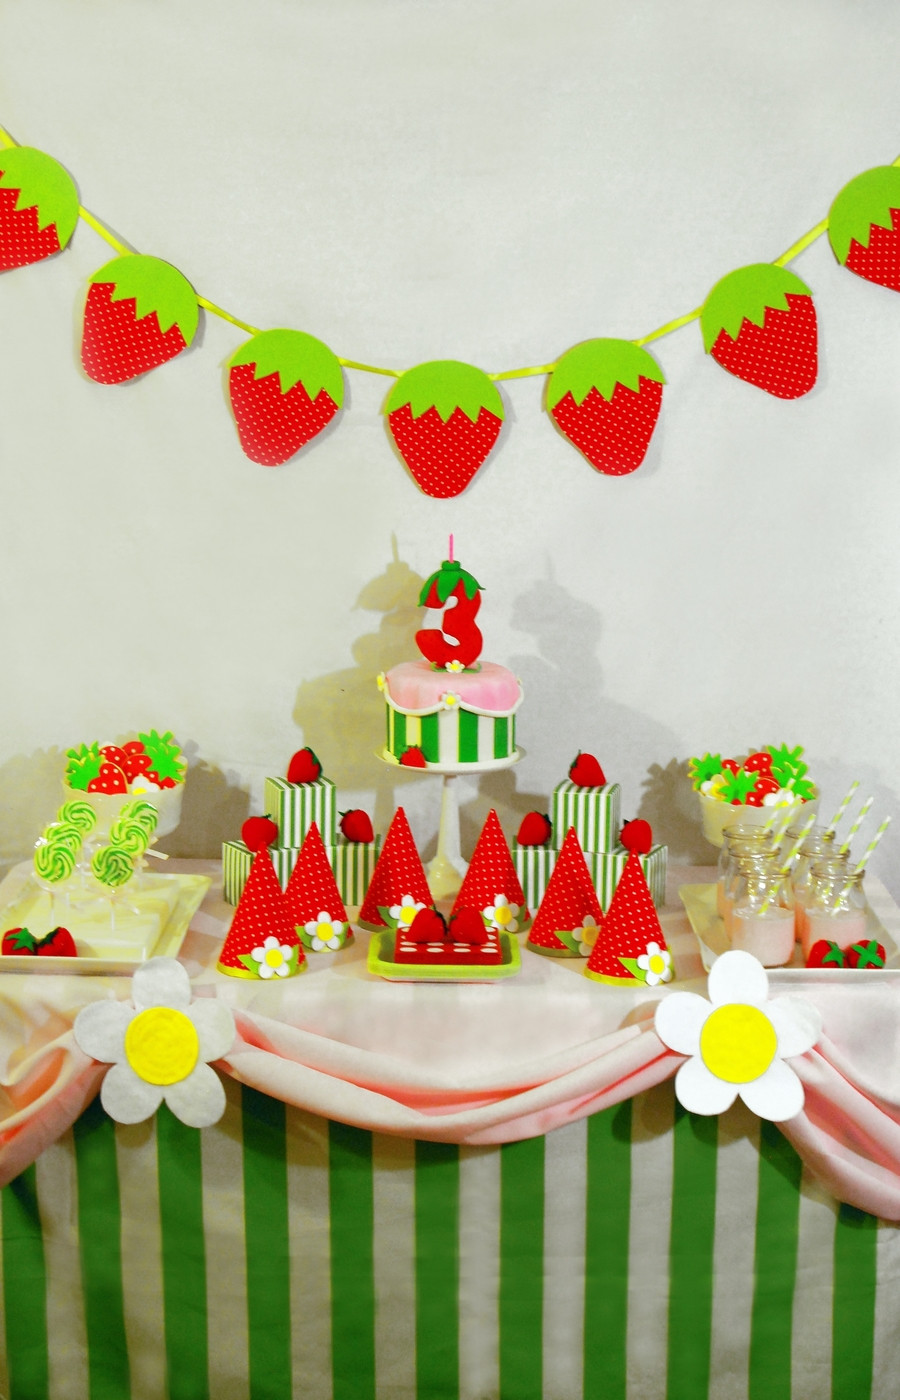 Strawberry Shortcake Birthday Decorations
 Strawberry Shortcake Birthday Cake And Dessert Table